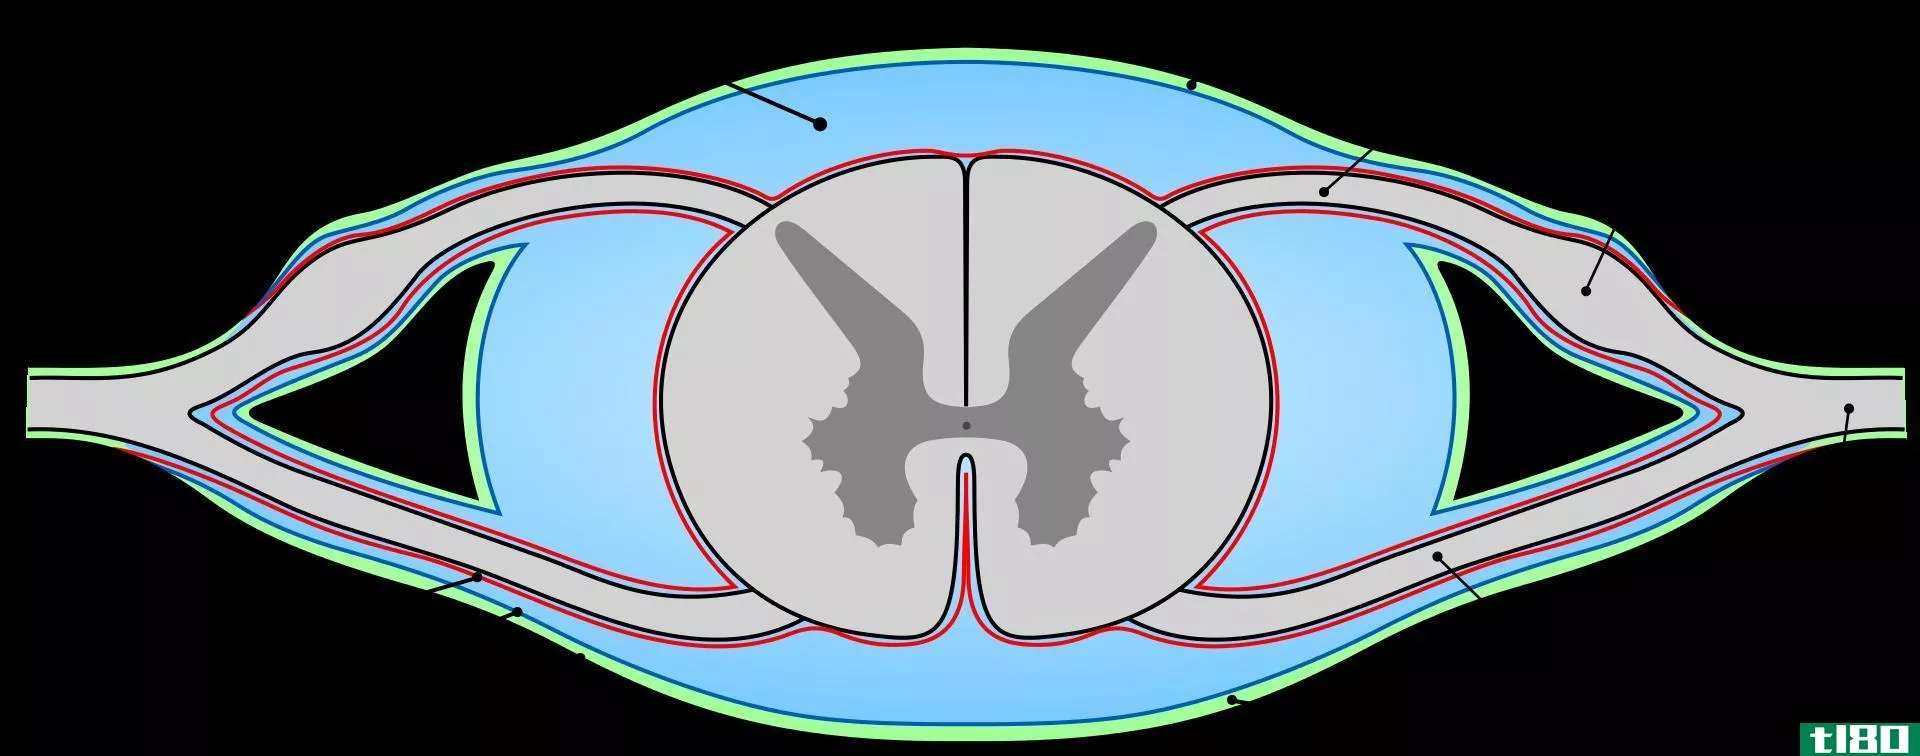 硬脑膜(dura mater of brain)和脊髓(spinal cord)的区别